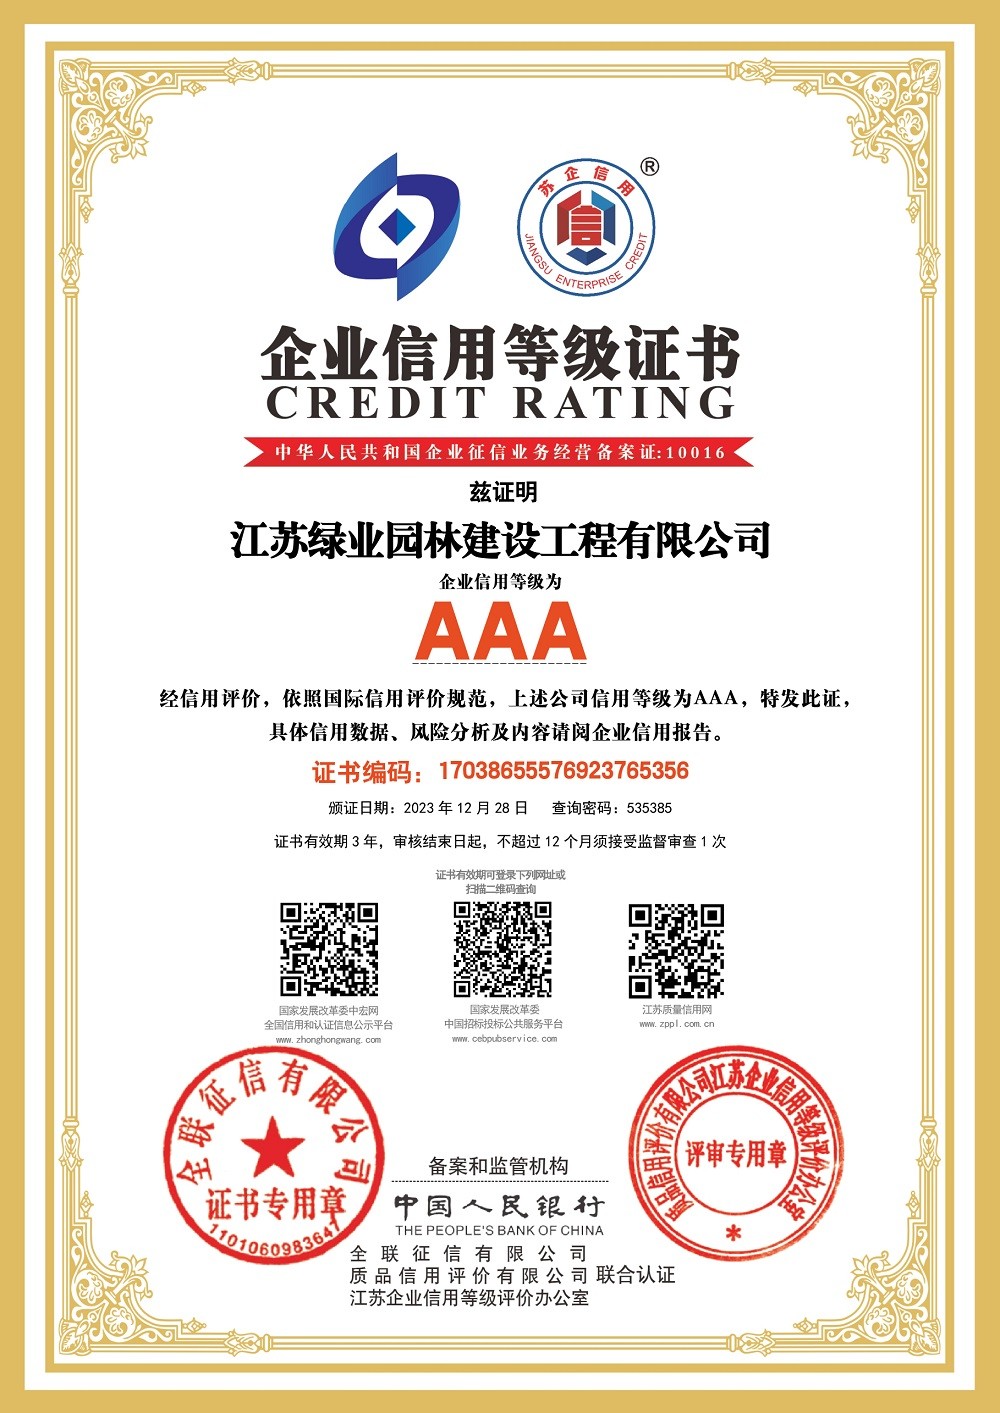 公司榮獲江蘇省“AAA信用企業”